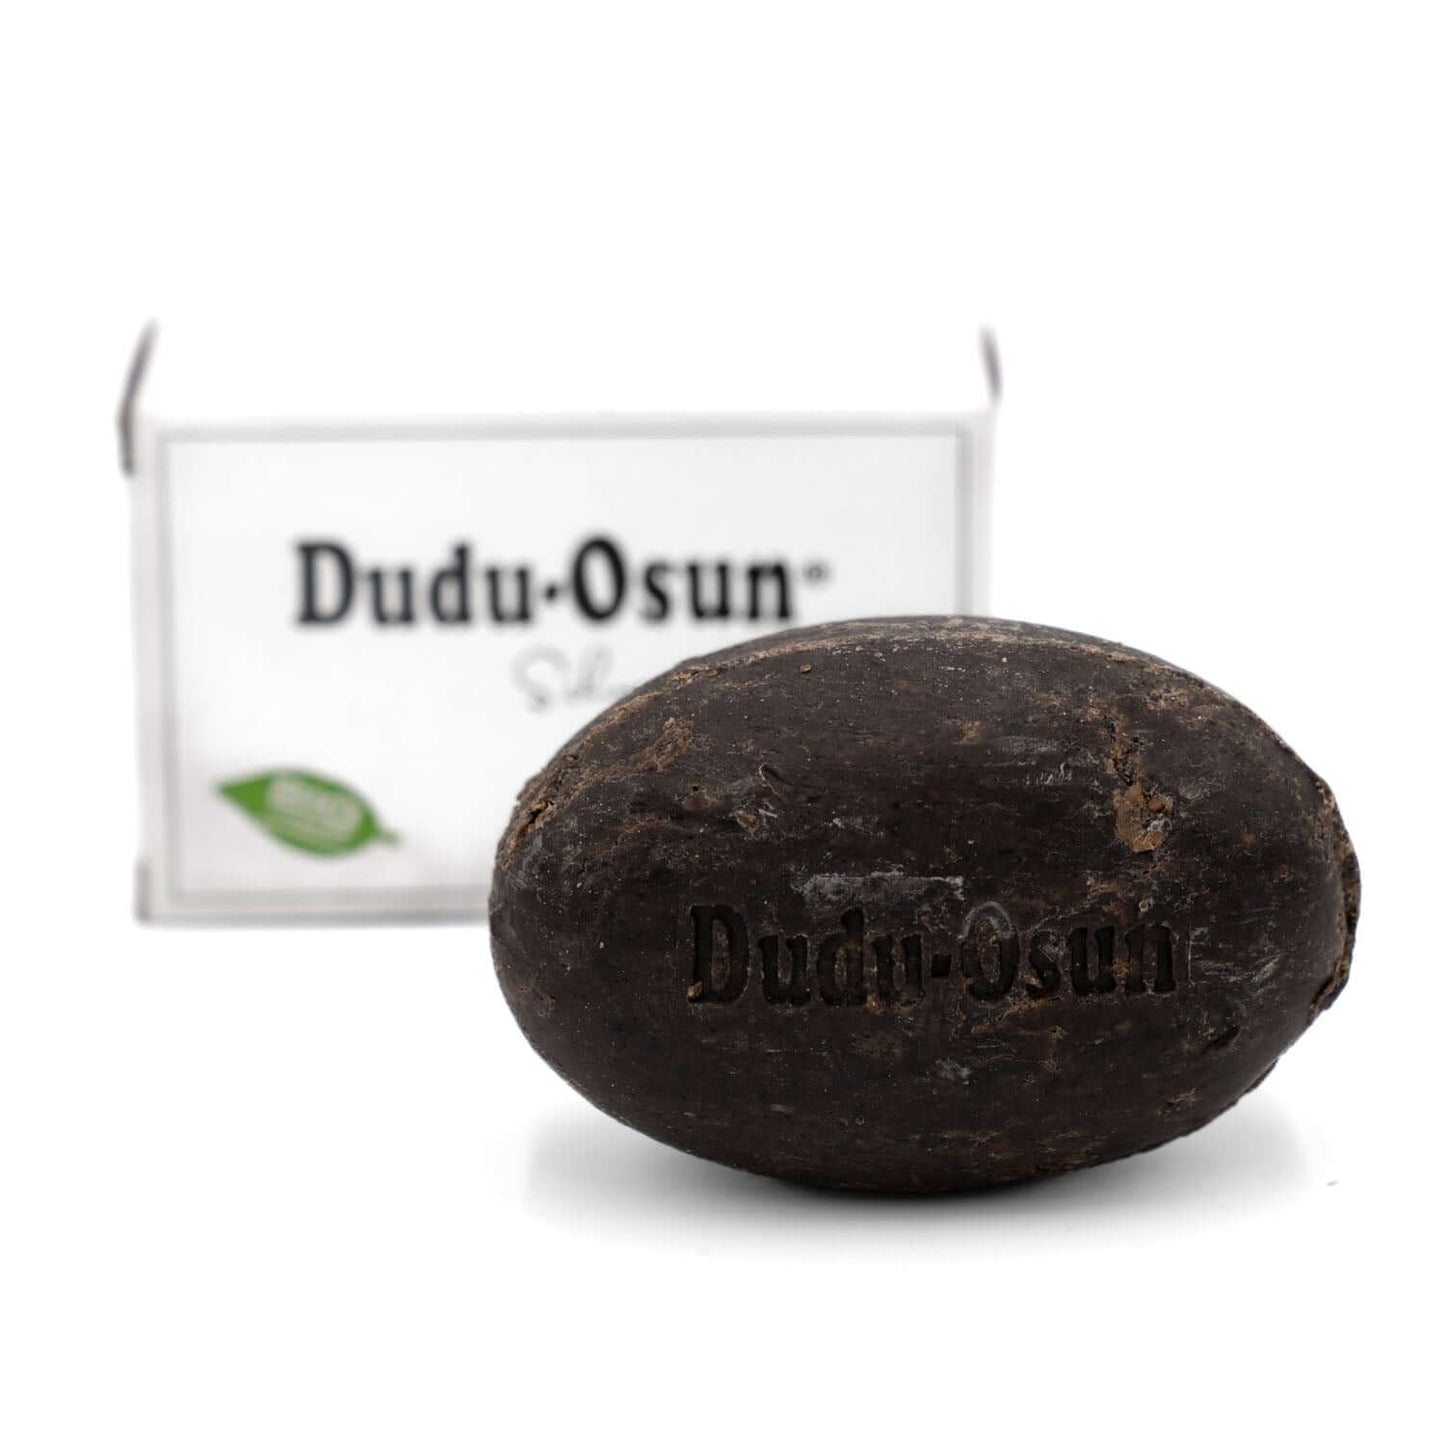 Dudu Osun® PURE - Schwarze Seife aus Afrika - parfümfrei 150g